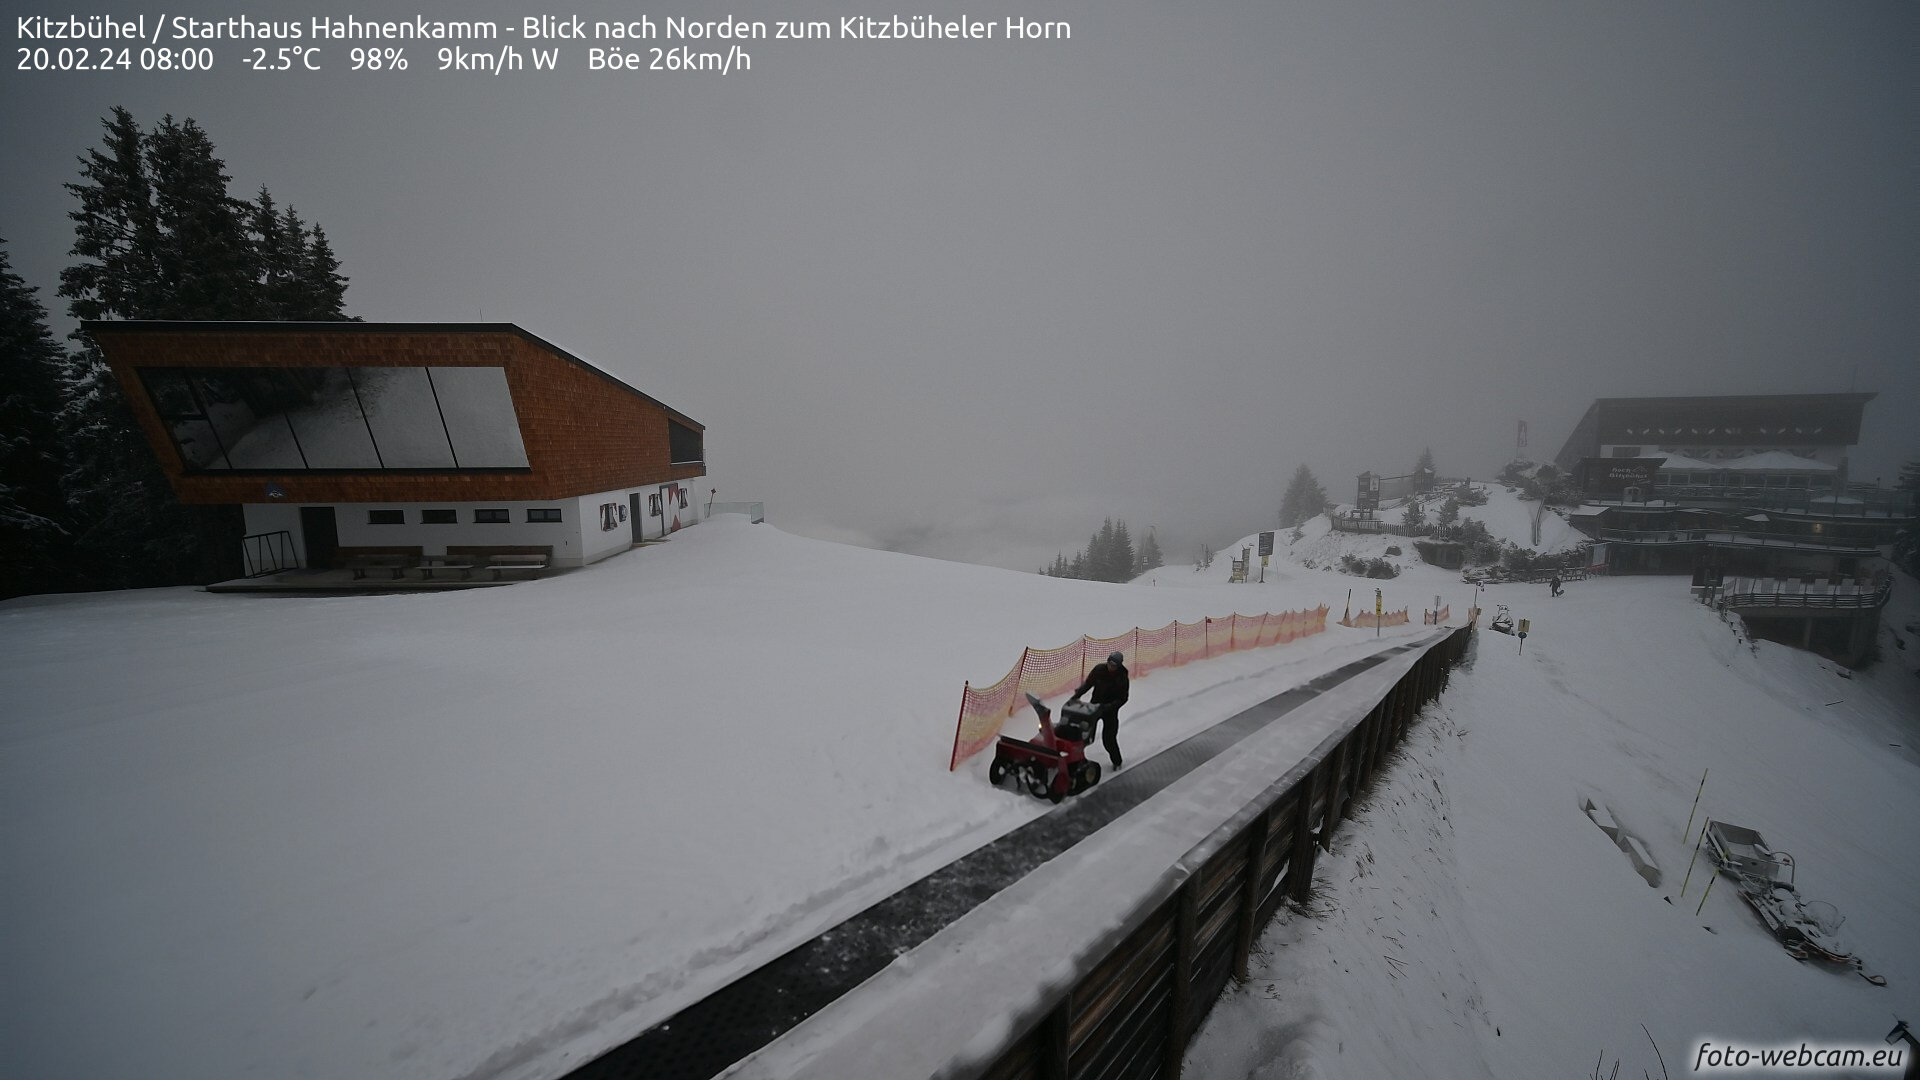 Ma reggeli webkamera. Kitzbühel, 1665 m, a legendás verseny indítóházánál a havat takarítják